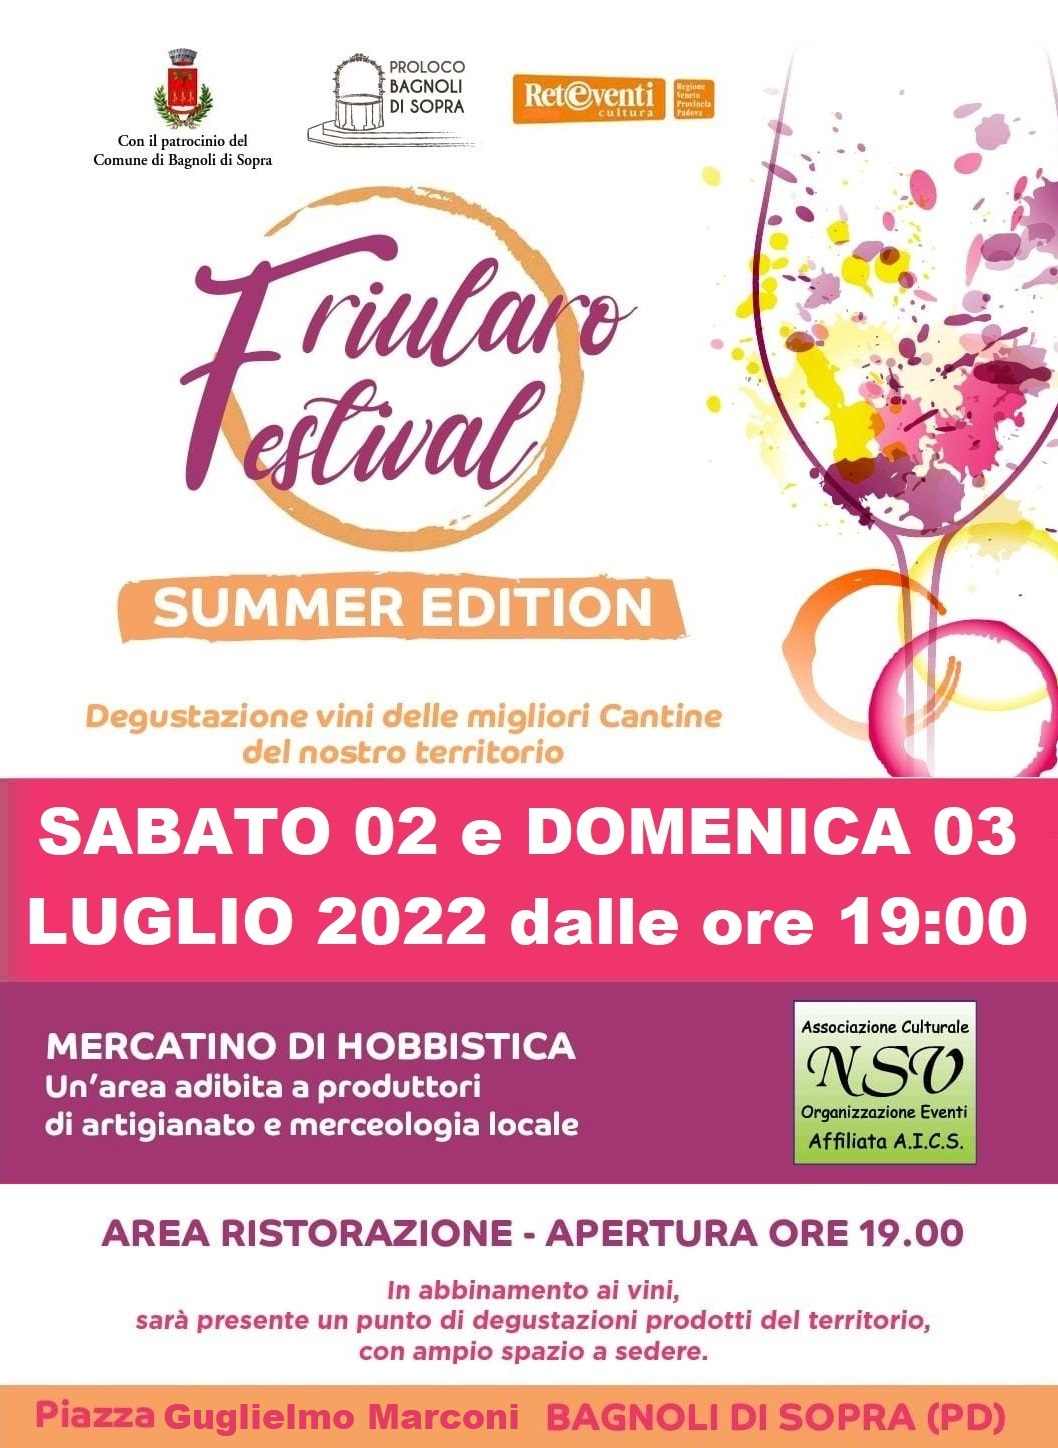 Bagnoli di Sopra (PD)
"Friularo Festival - Summer Edition e Mercatino"
2-3 Luglio 2022 